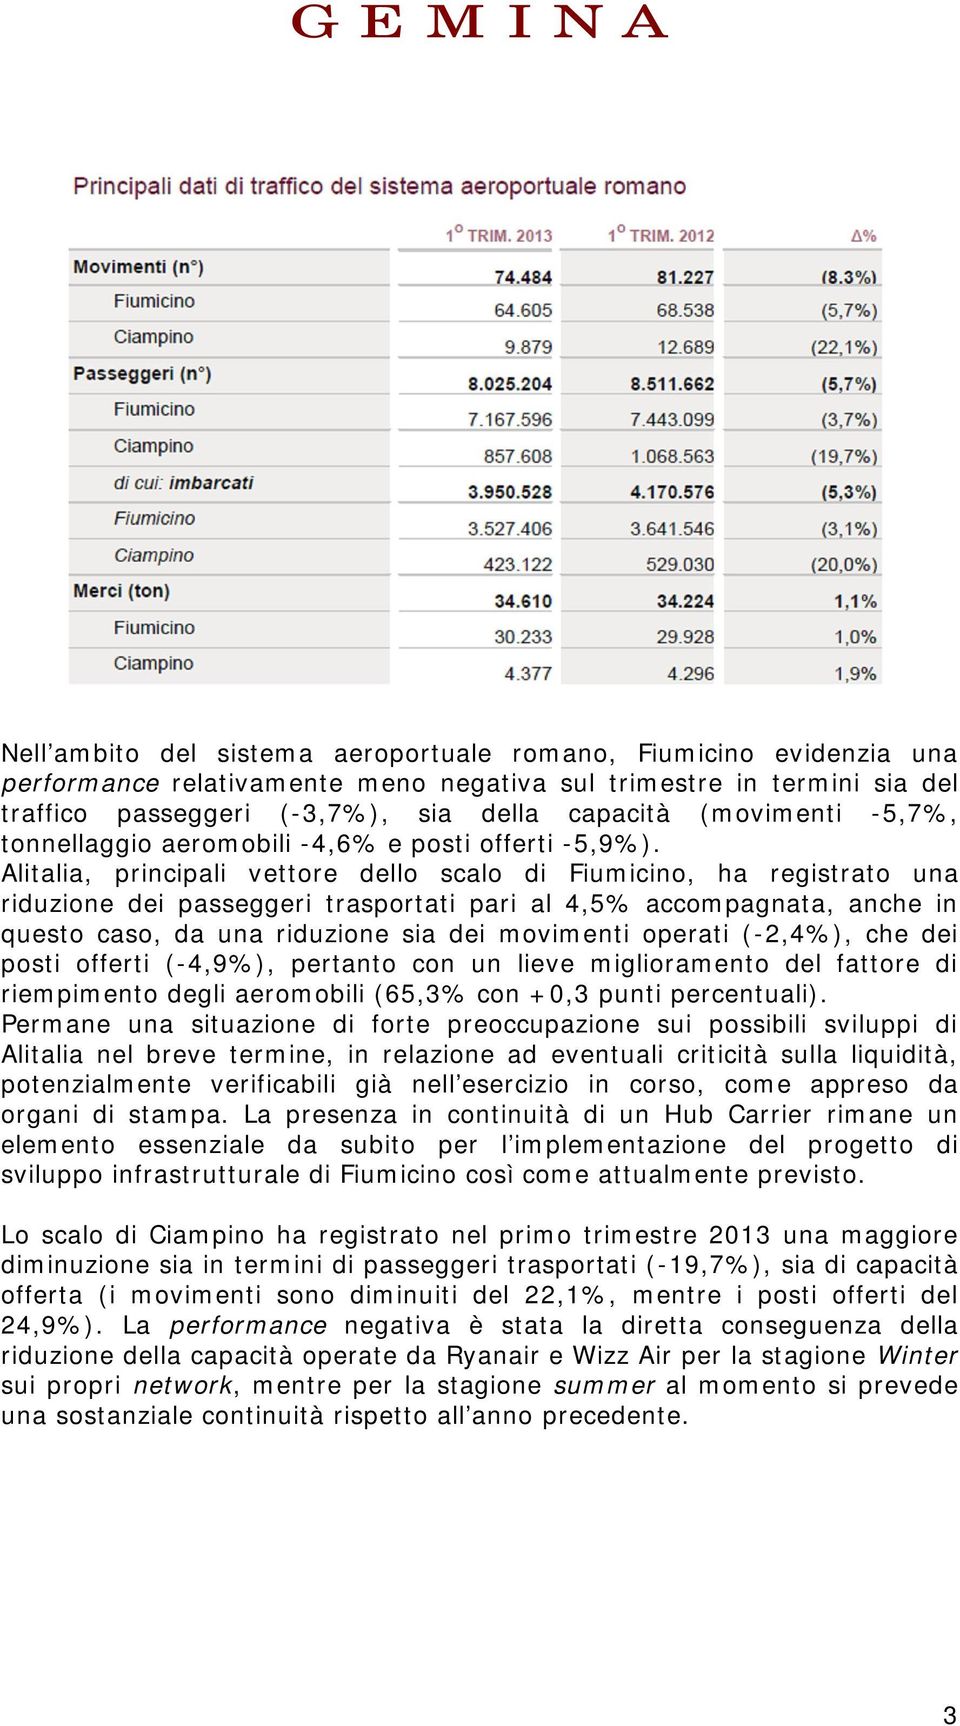 Alitalia, principali vettore dello scalo di Fiumicino, ha registrato una riduzione dei passeggeri trasportati pari al 4,5% accompagnata, anche in questo caso, da una riduzione sia dei movimenti